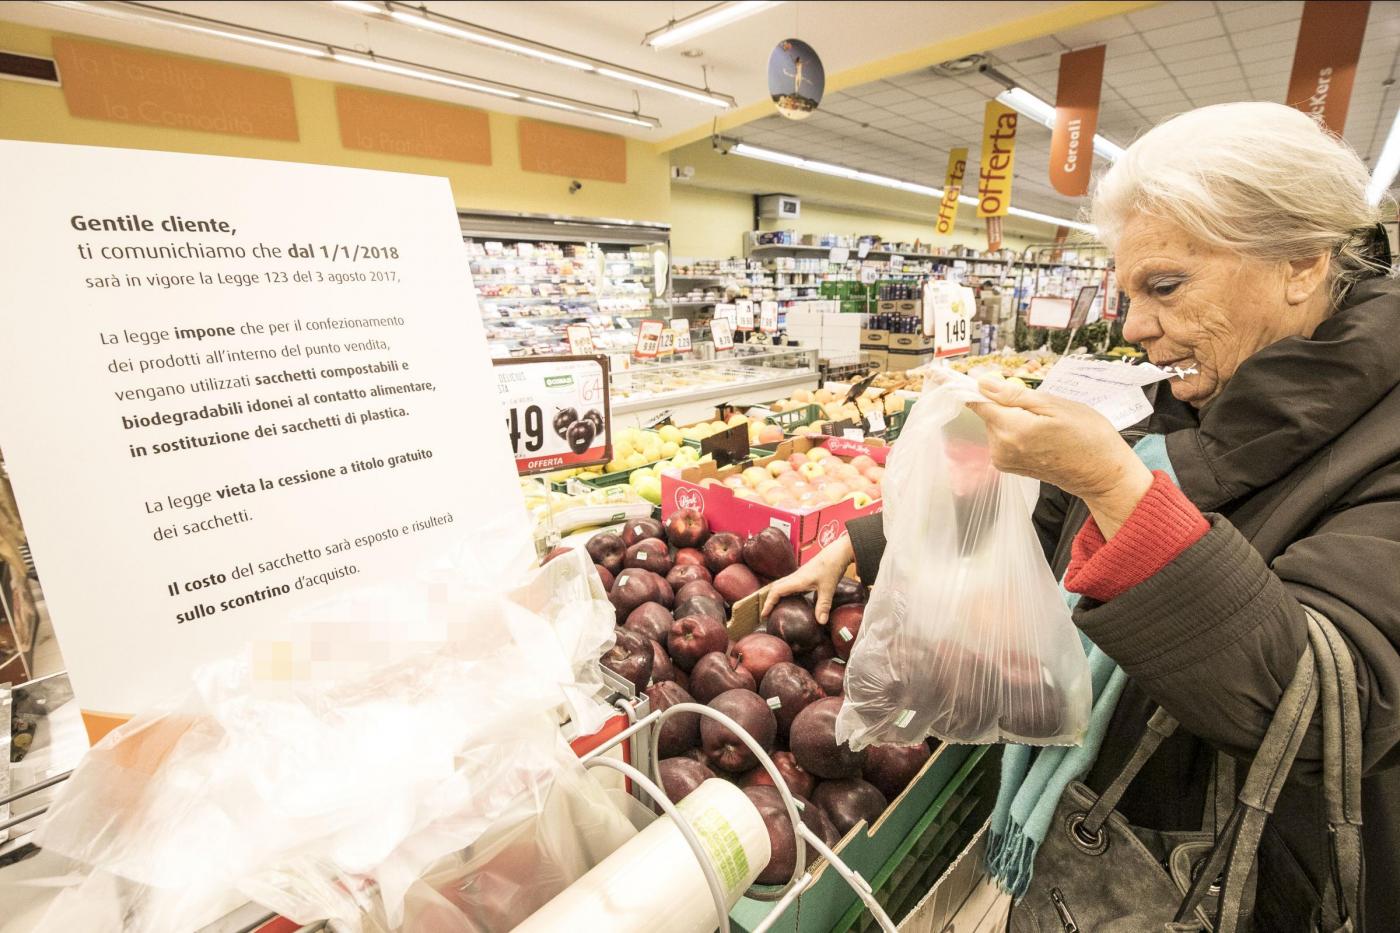 Sacchetti biodegradabili a pagamento nei supermercati